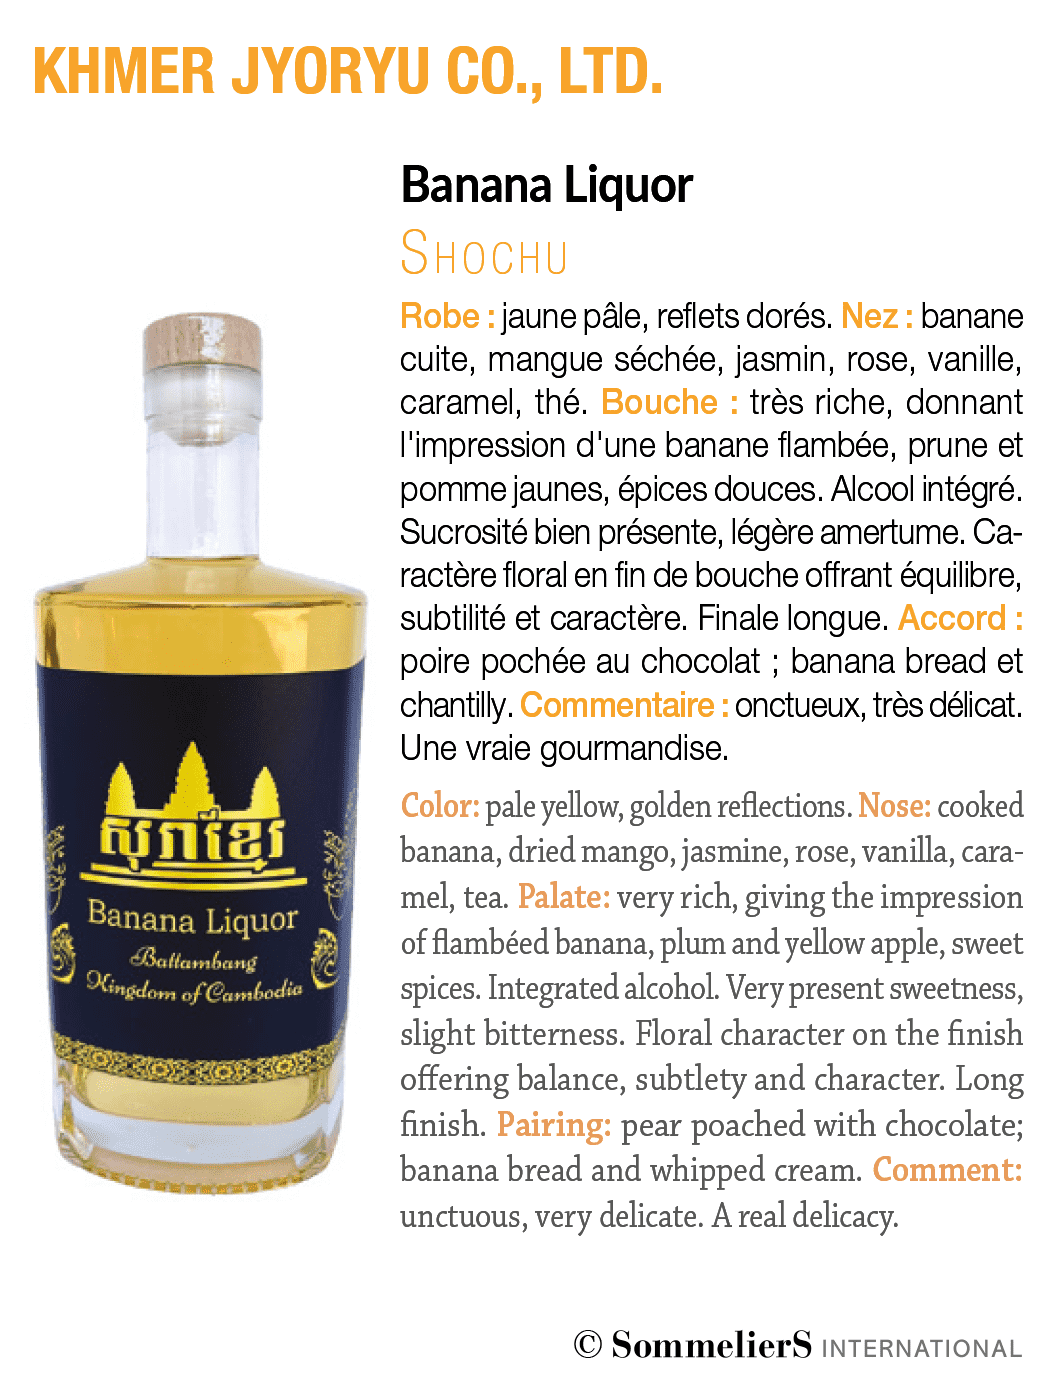 Sommeliers International Banana Liquor